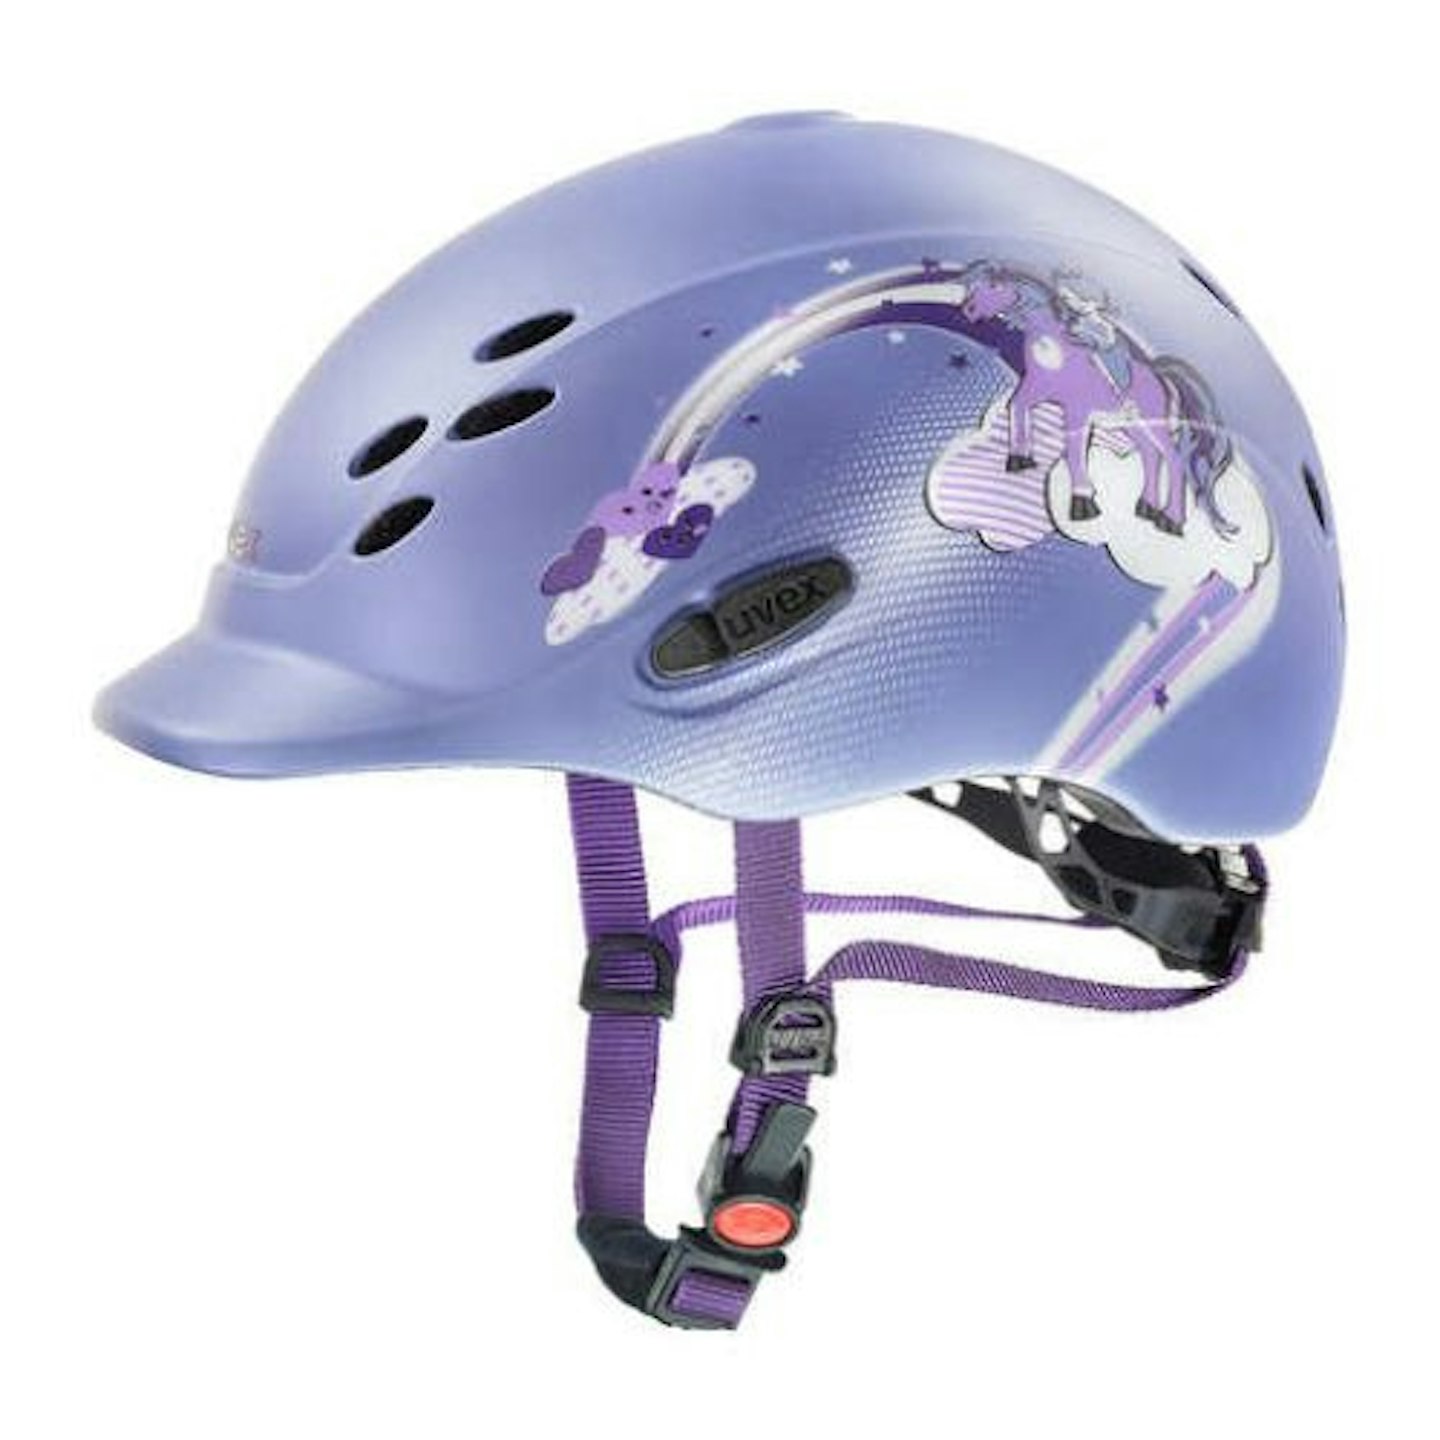 Best children's riding hats Uvex Onyxx Princess Kids' Riding Helmet